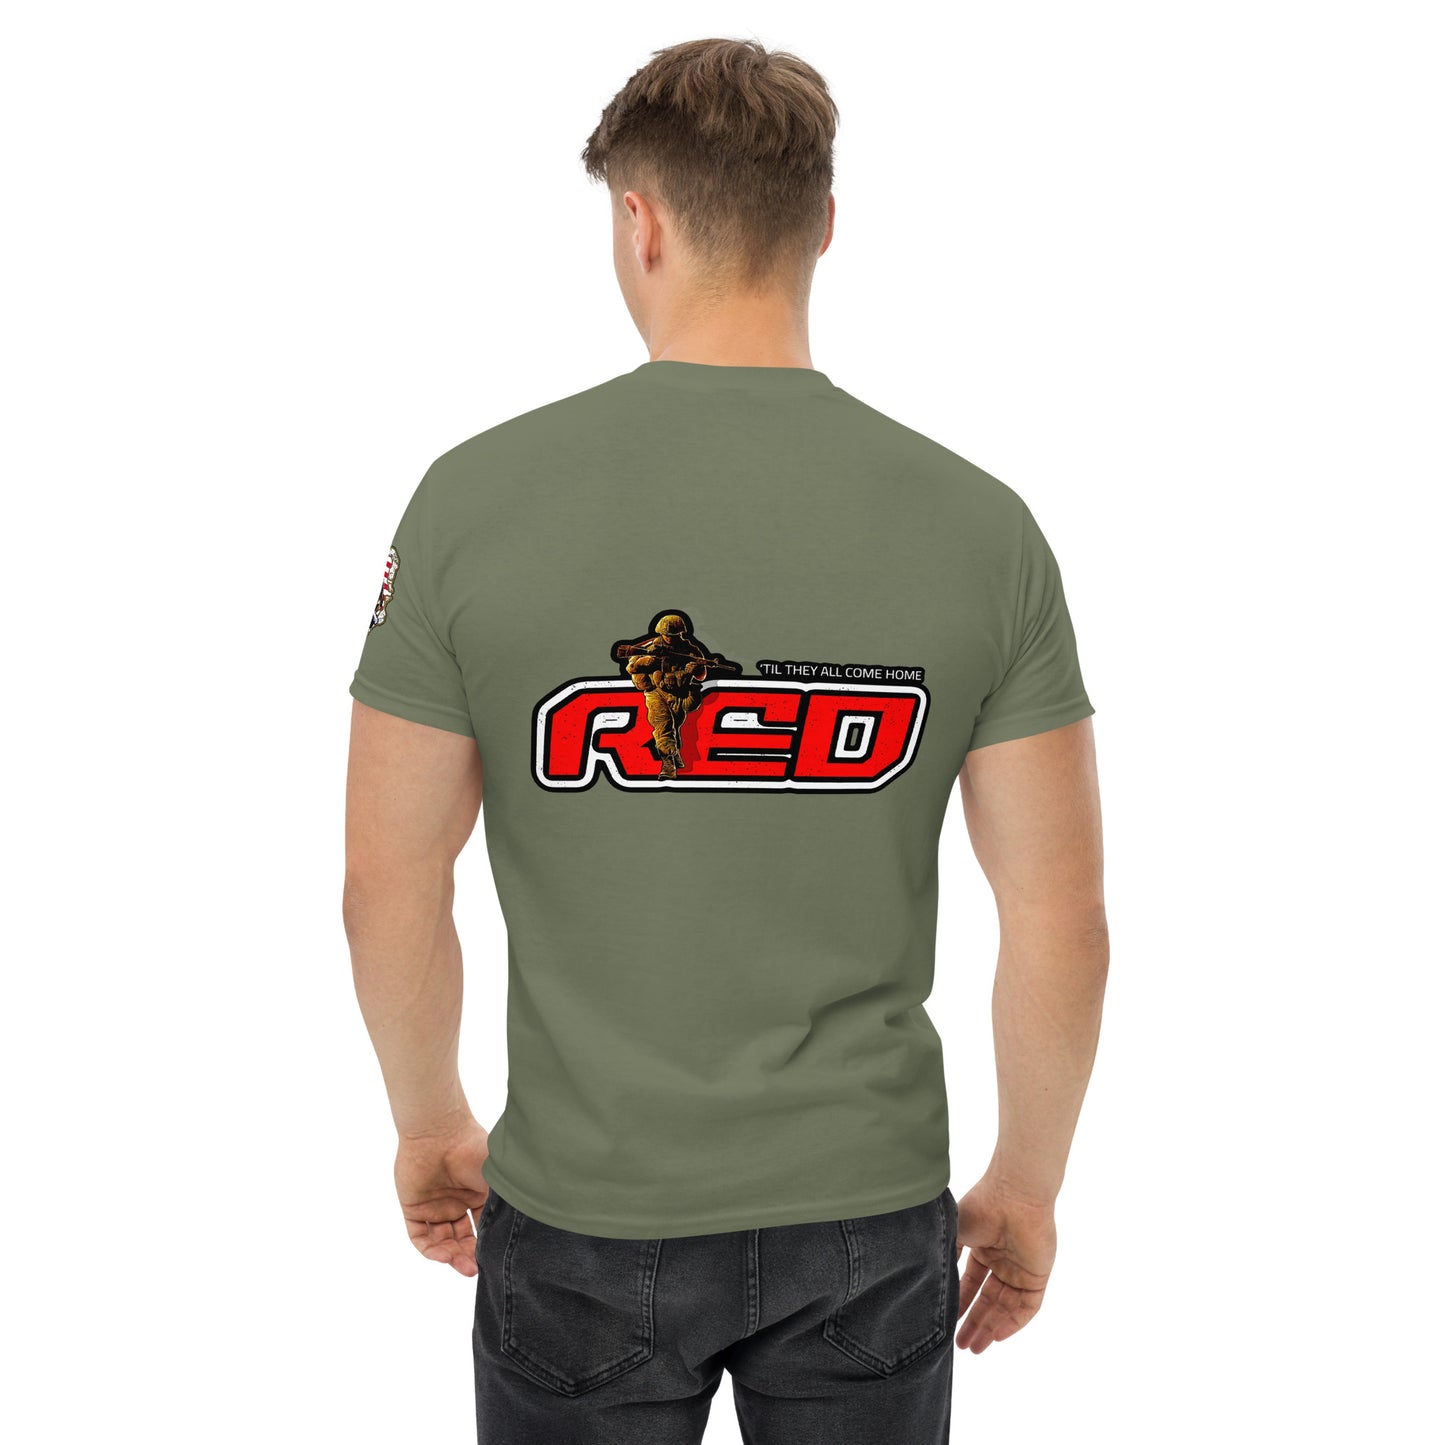 RED-1 Troop